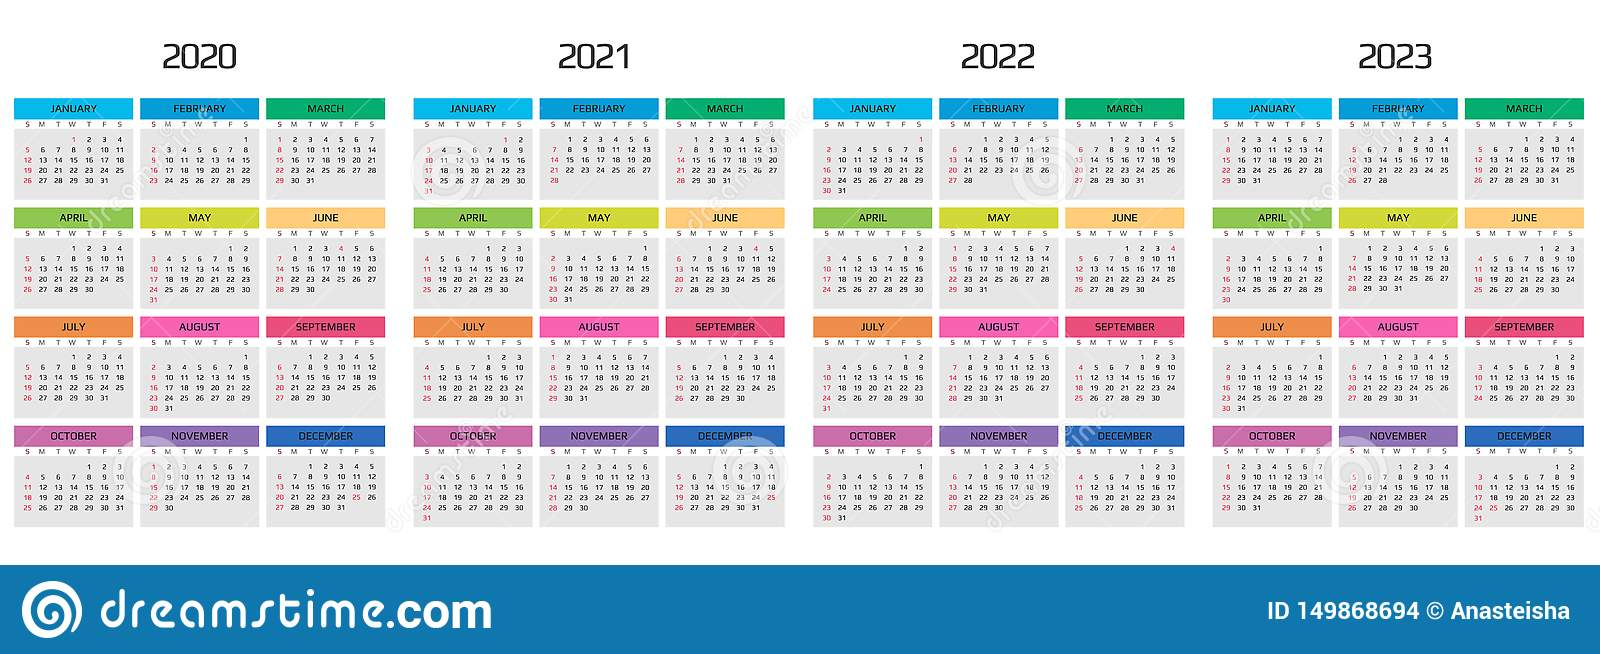 Cuesta College Calendar 20222023